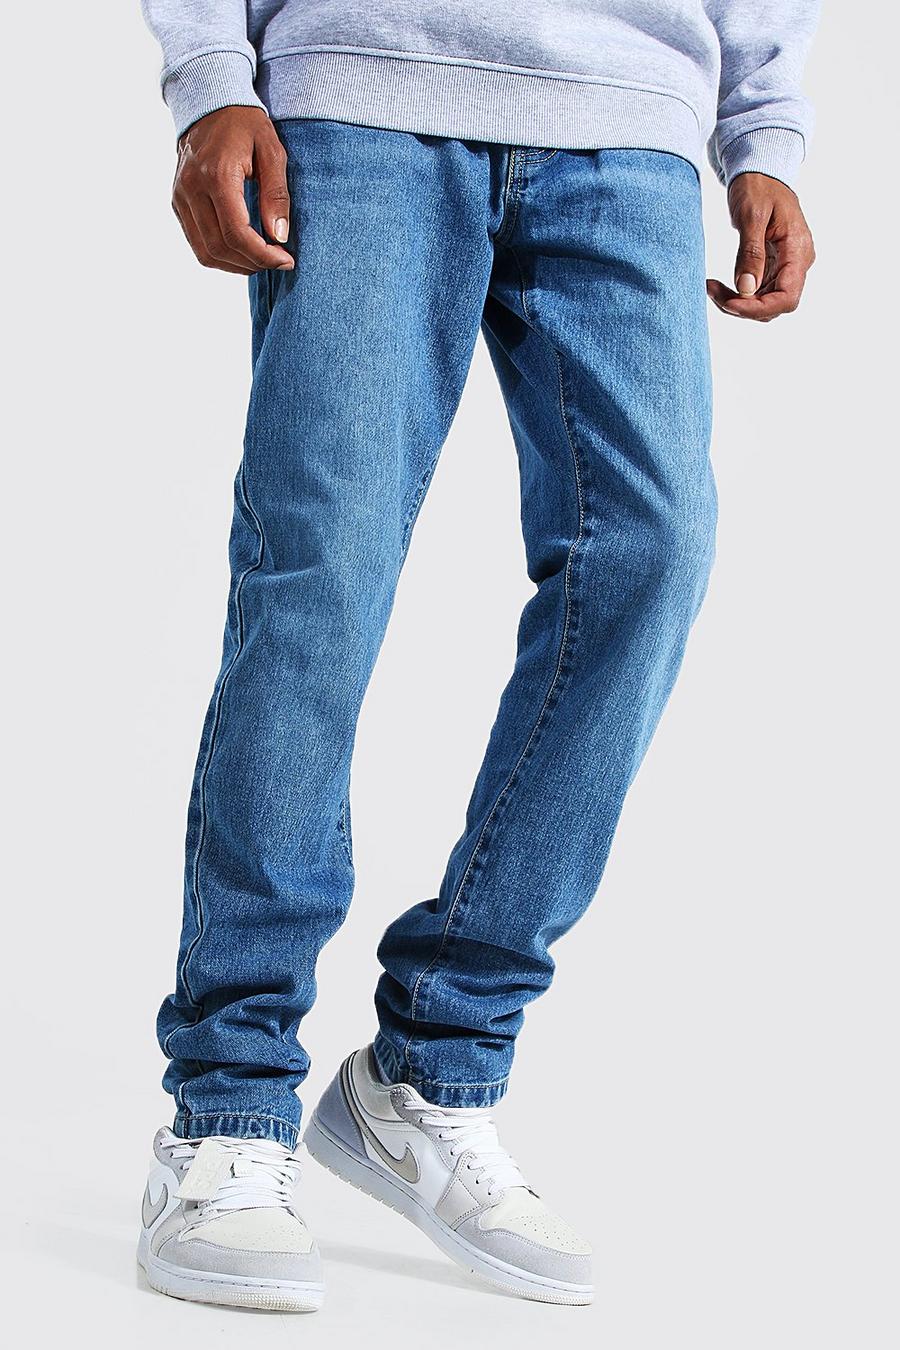 כחול ביניים ג'ינס צר מבד קשיח לגברים גבוהים image number 1